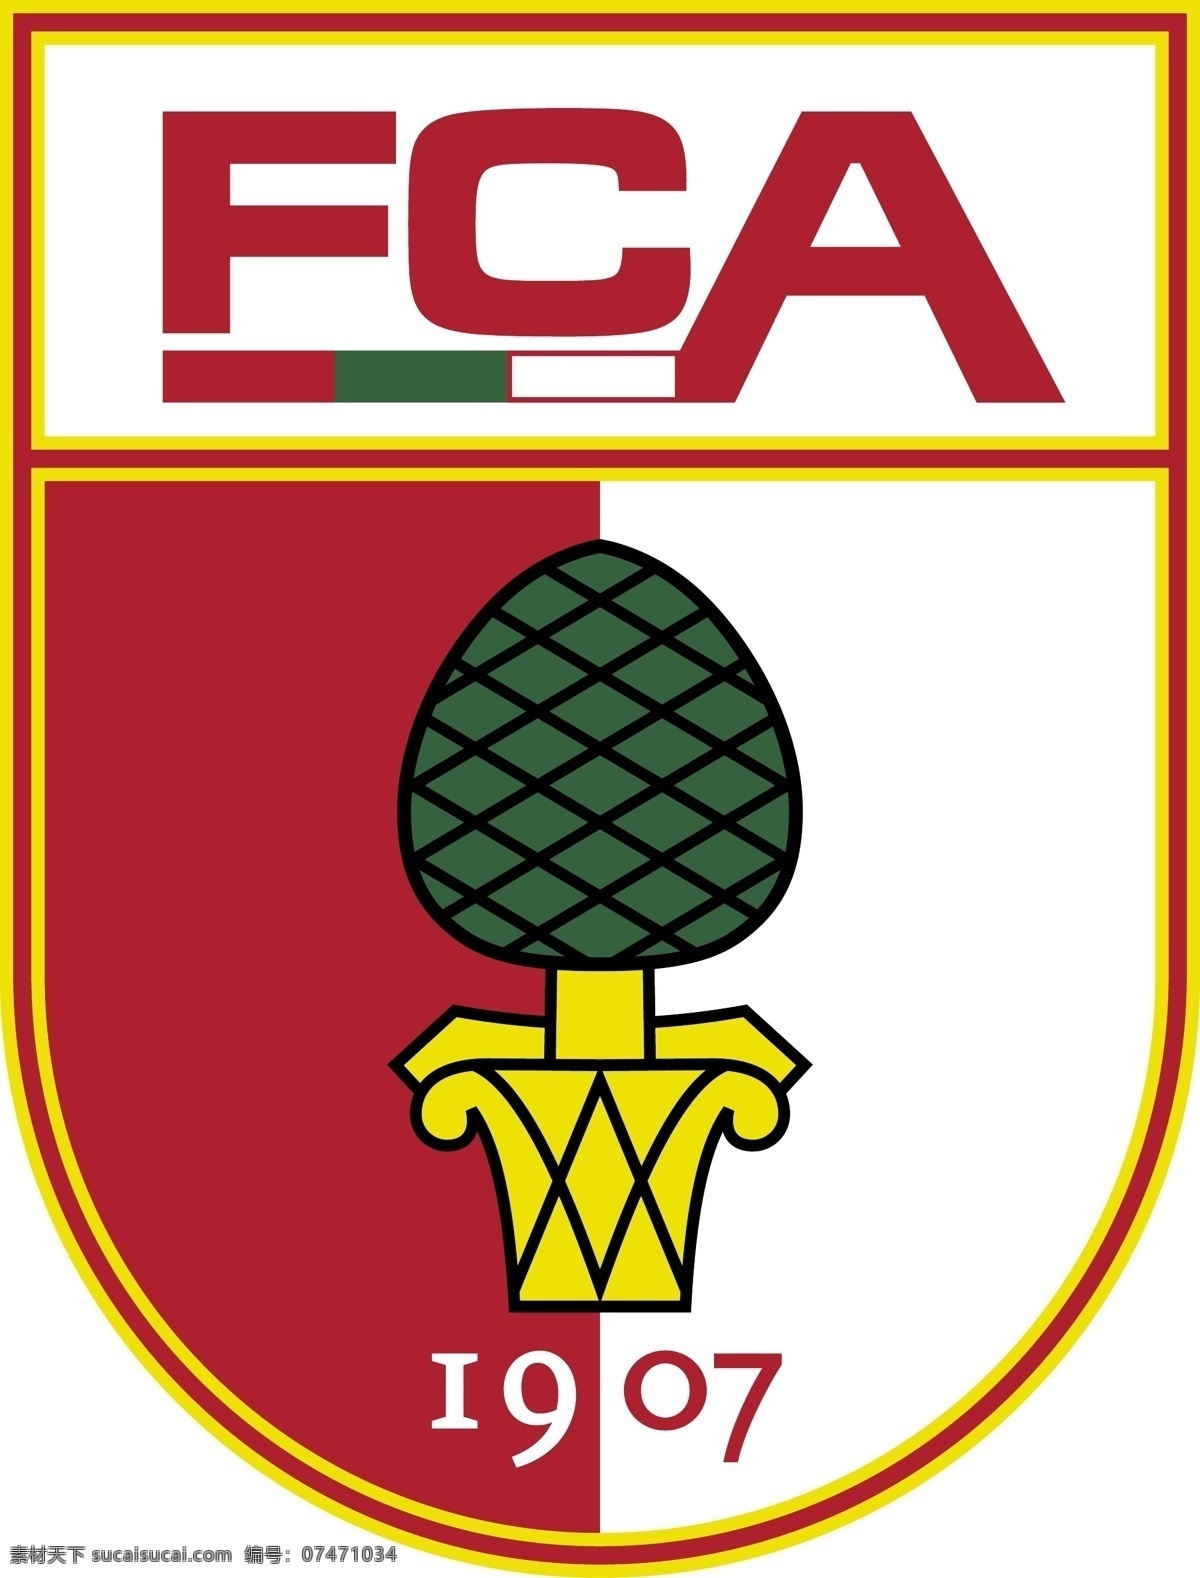 奥格斯堡 足球 俱乐部 徽标 logo设计 德国 德甲 德国杯 超级杯 欧冠 欧联 欧足联 联赛 杯赛 矢量图